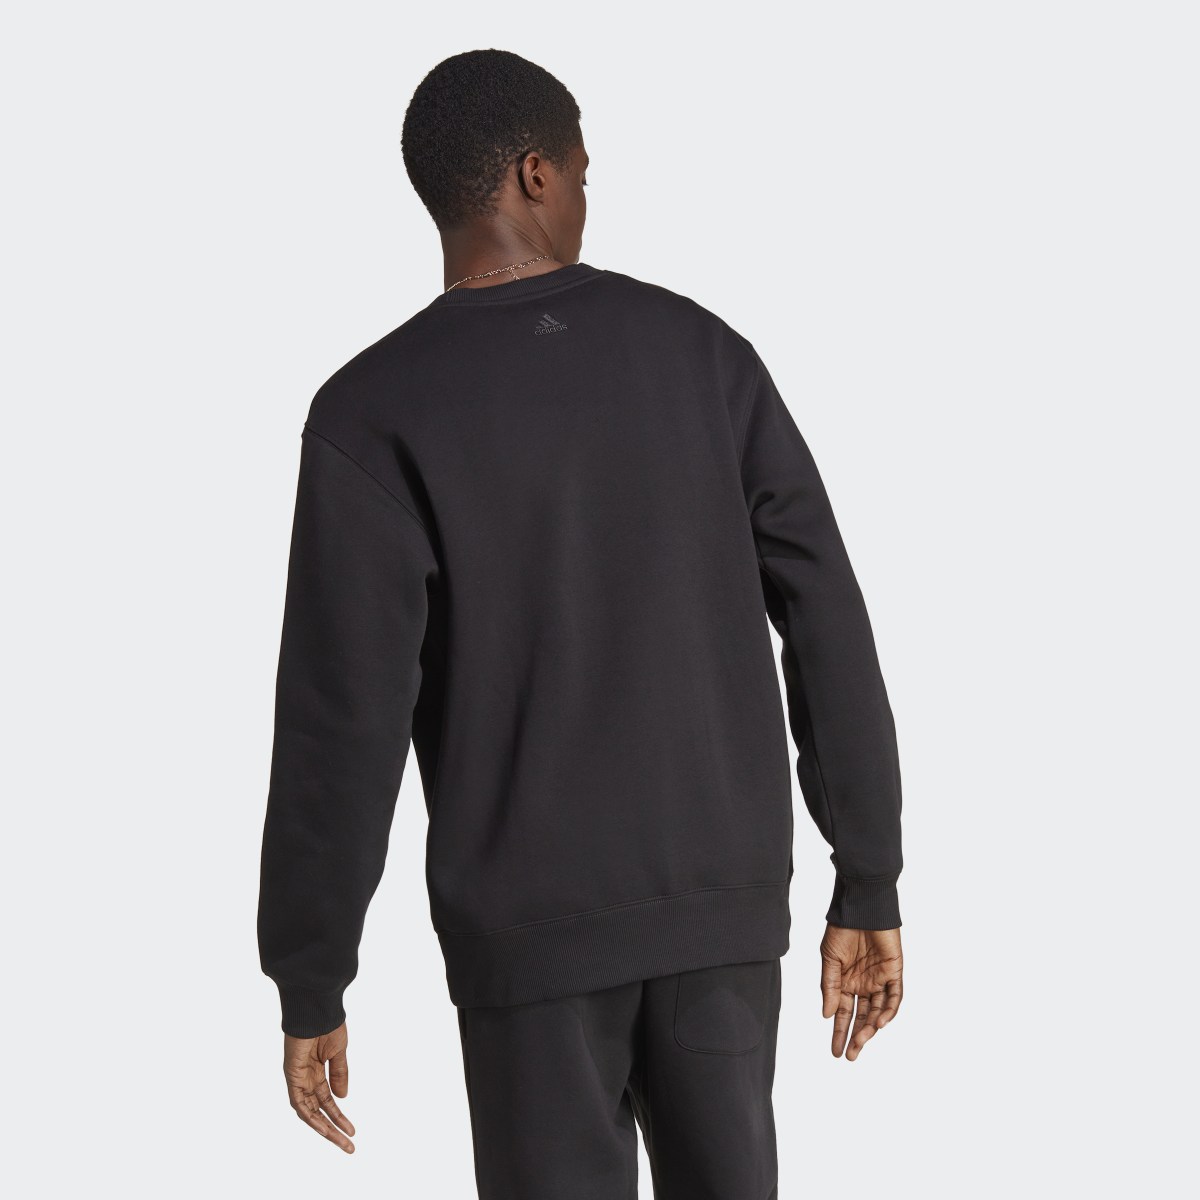 Adidas All SZN Fleece Graphic Sweatshirt. 4